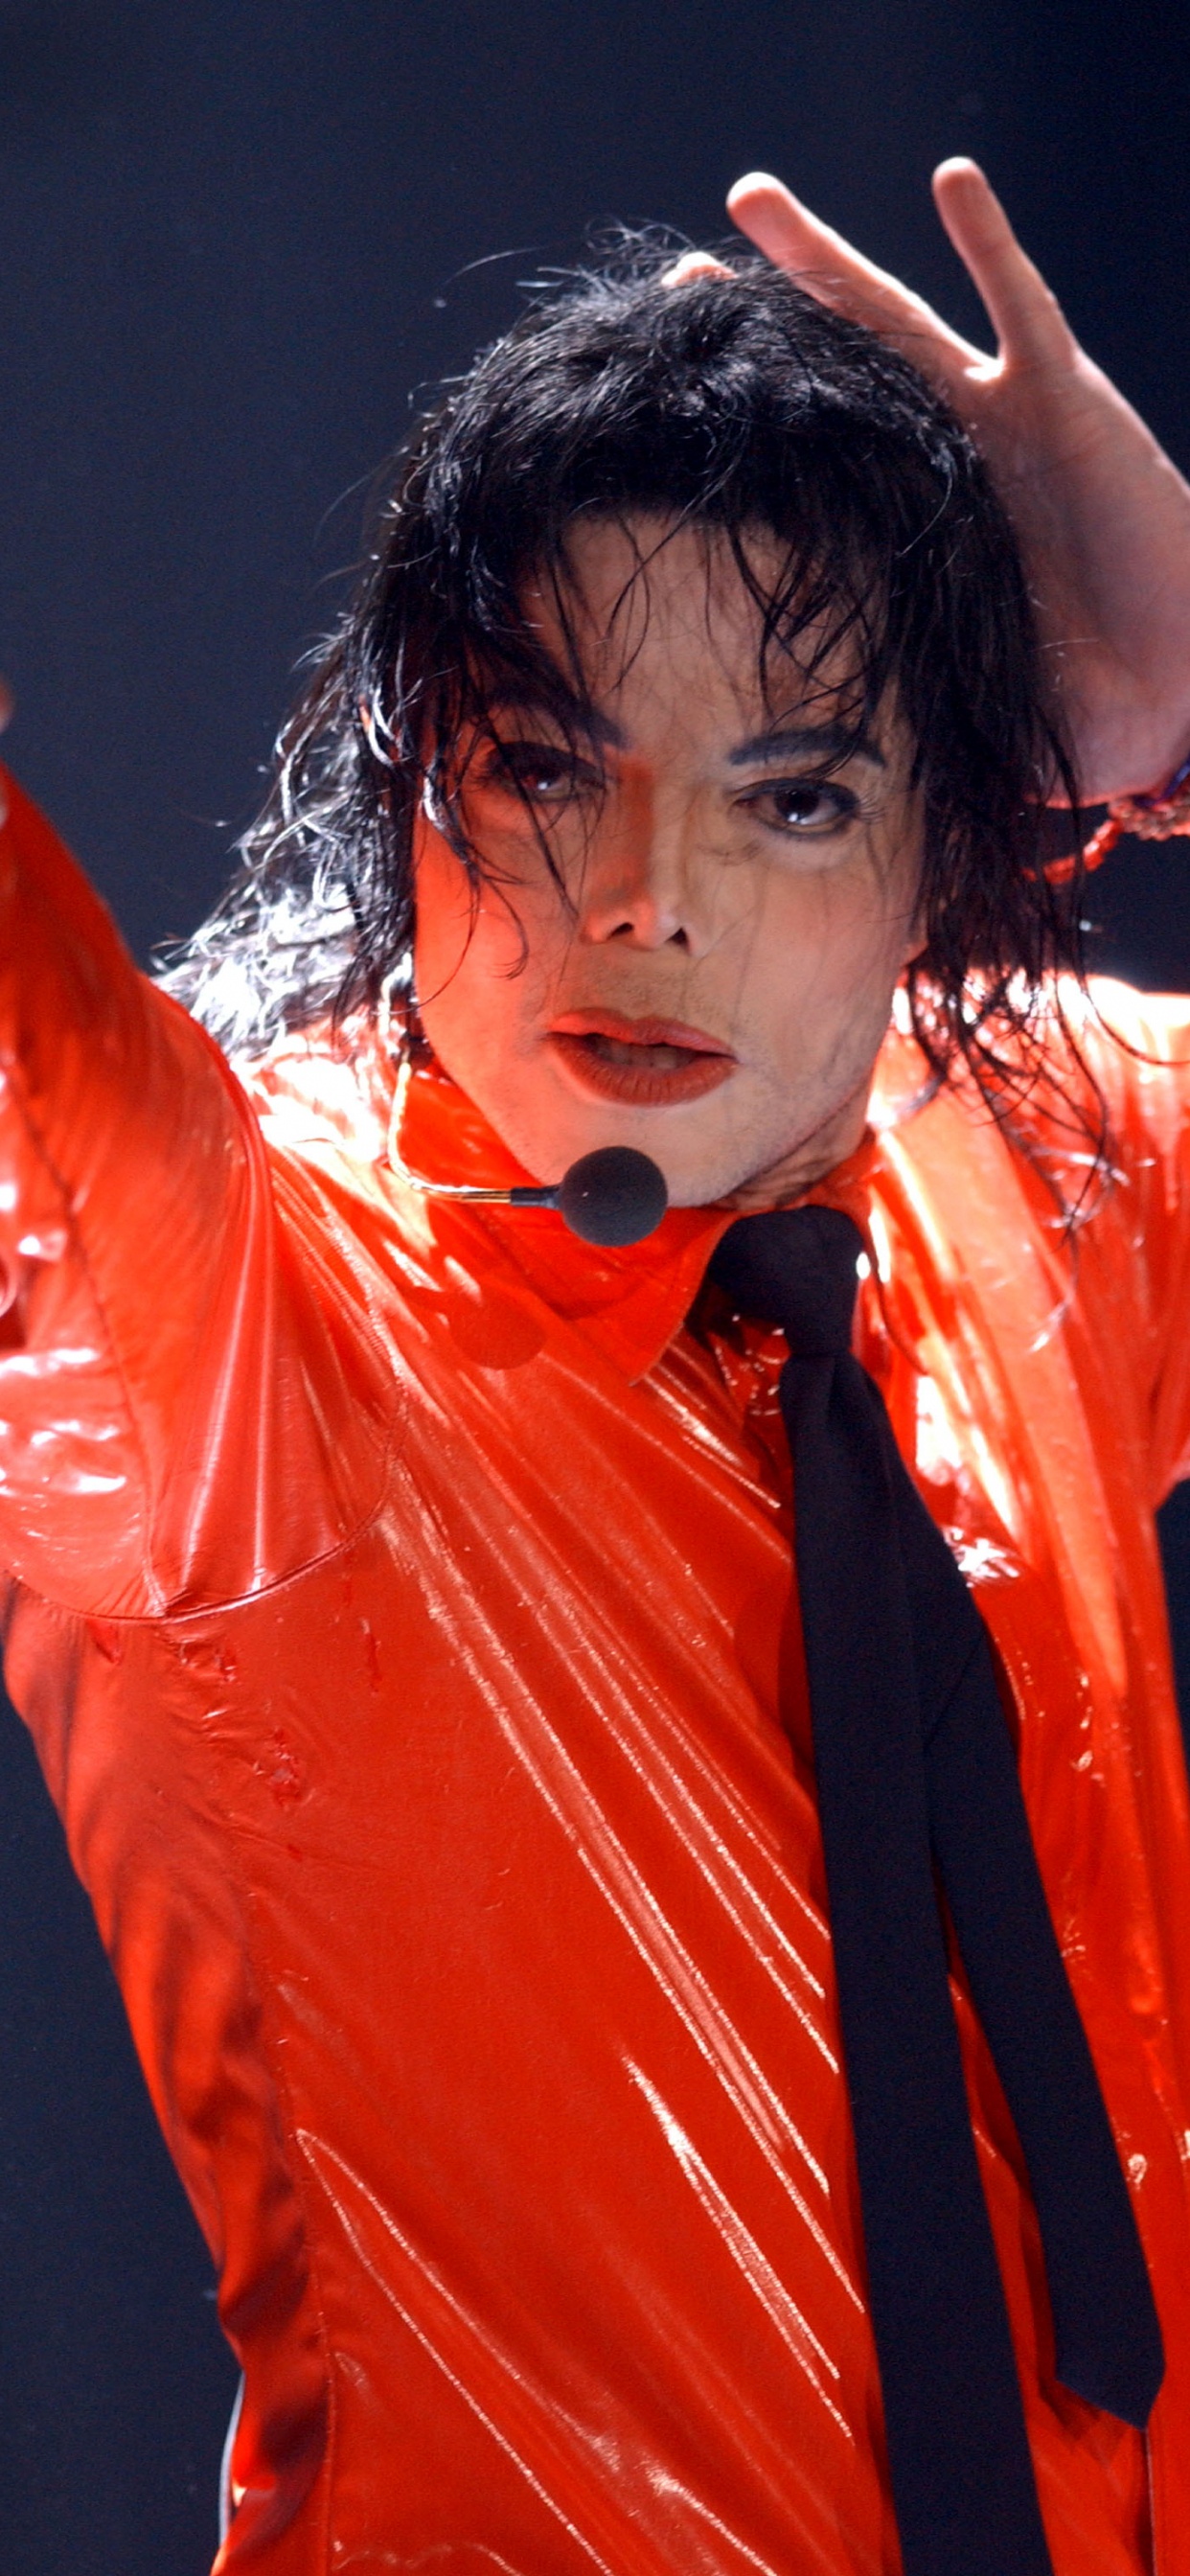 Michael Jackson, Leistung, Darstellende Kunst, Sänger, Stirn. Wallpaper in 1242x2688 Resolution